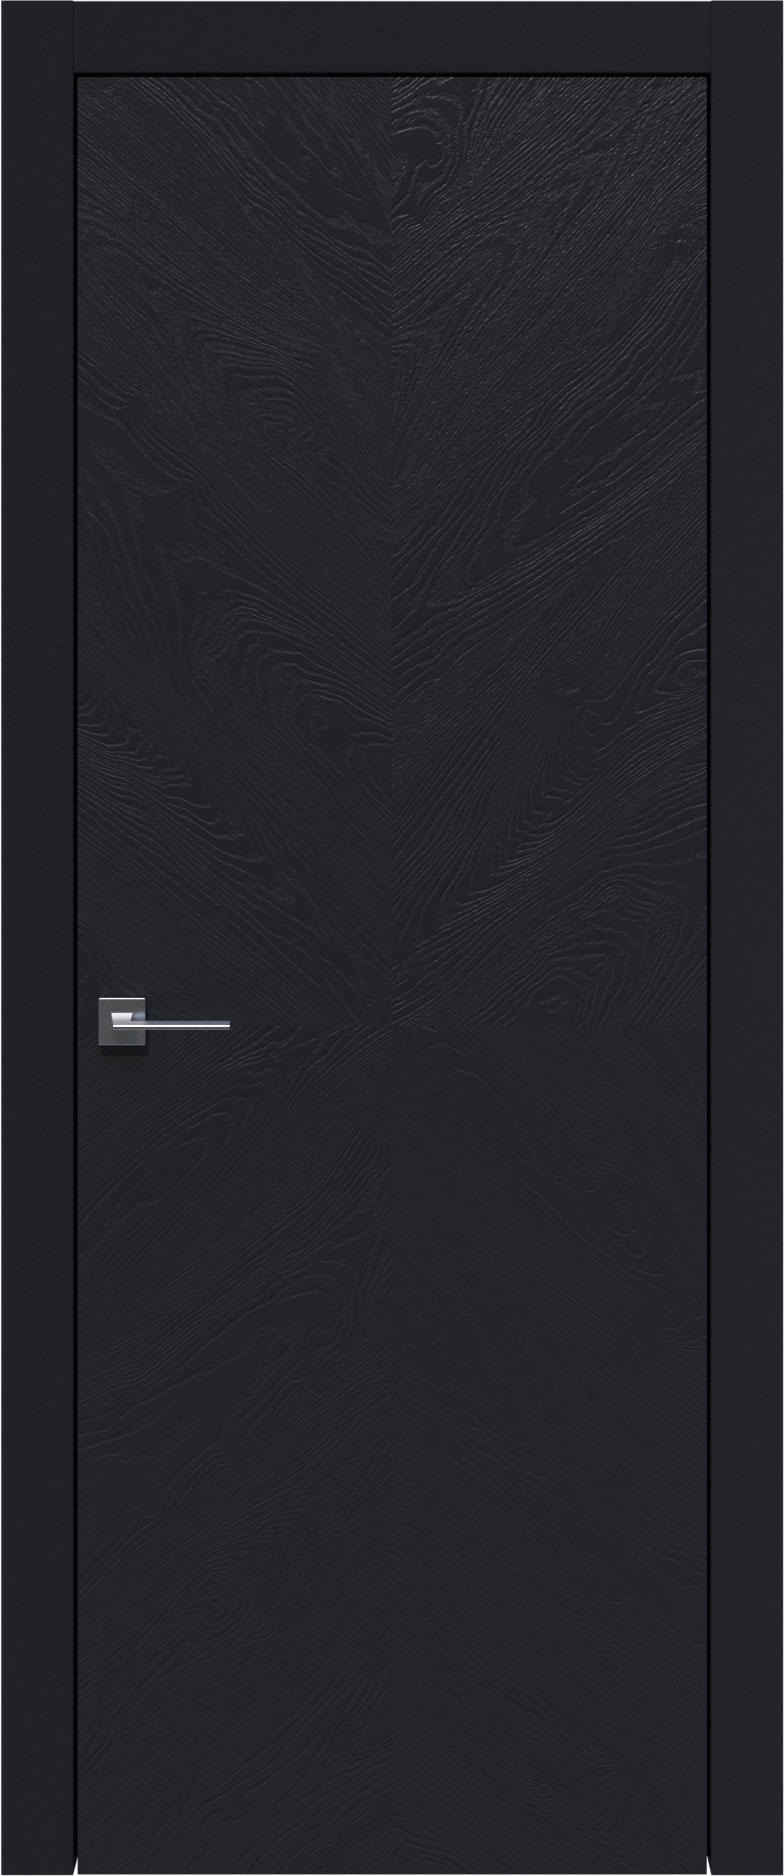 Tivoli И-1 цвет - Черная эмаль по шпону (RAL 9004) Без стекла (ДГ)